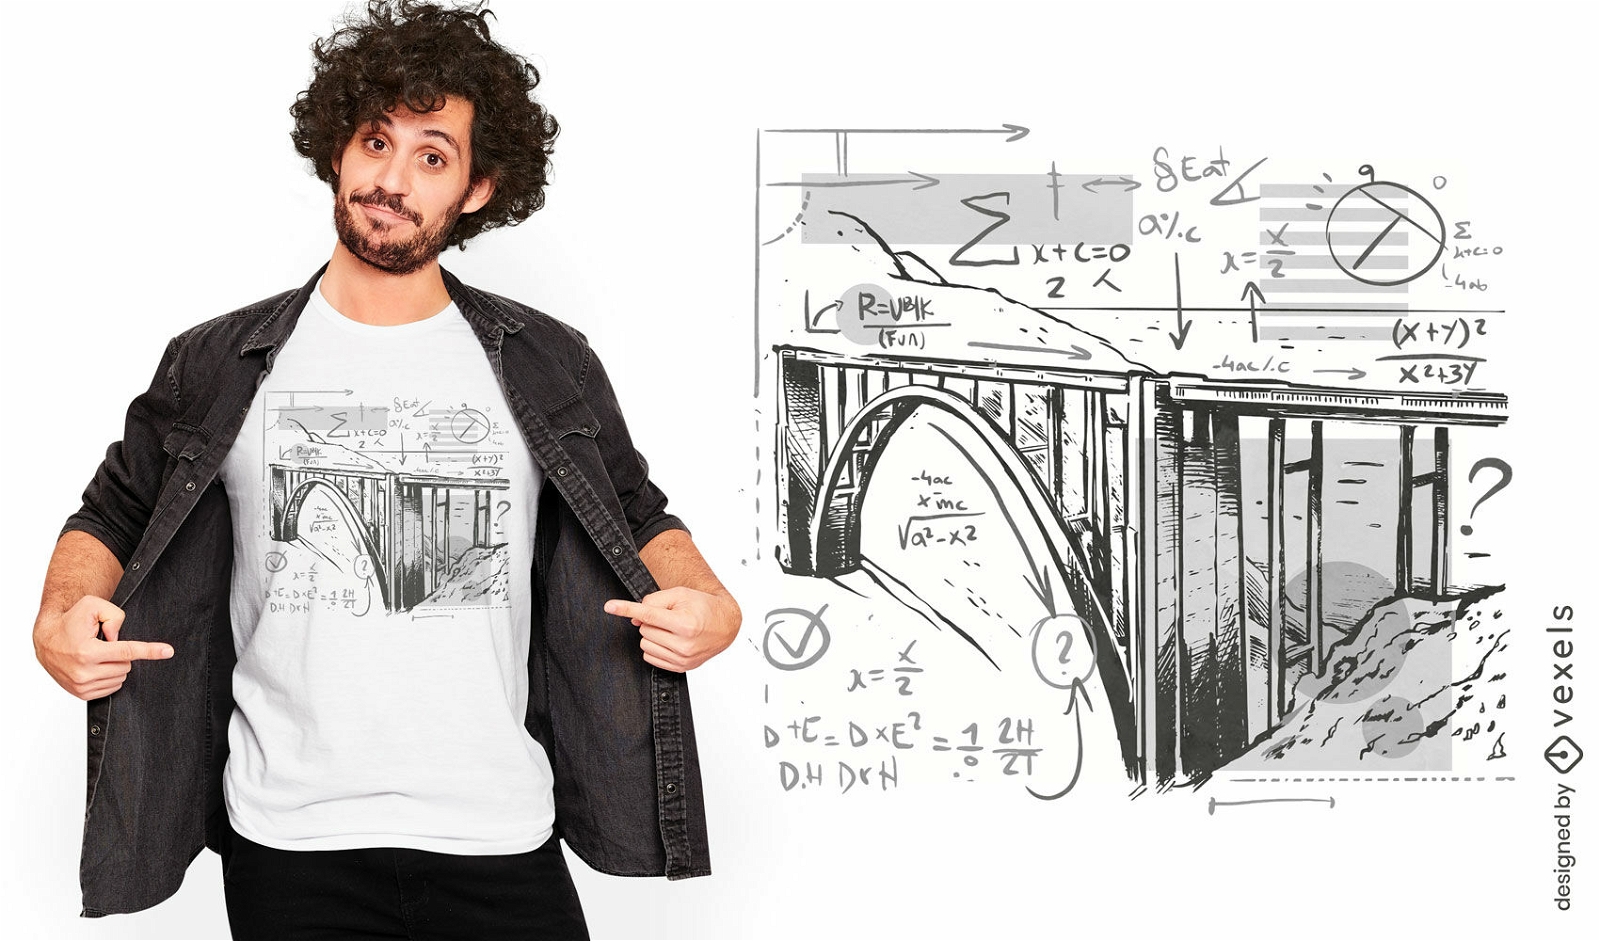 Dise?o de camiseta de puente y ecuaciones matem?ticas.